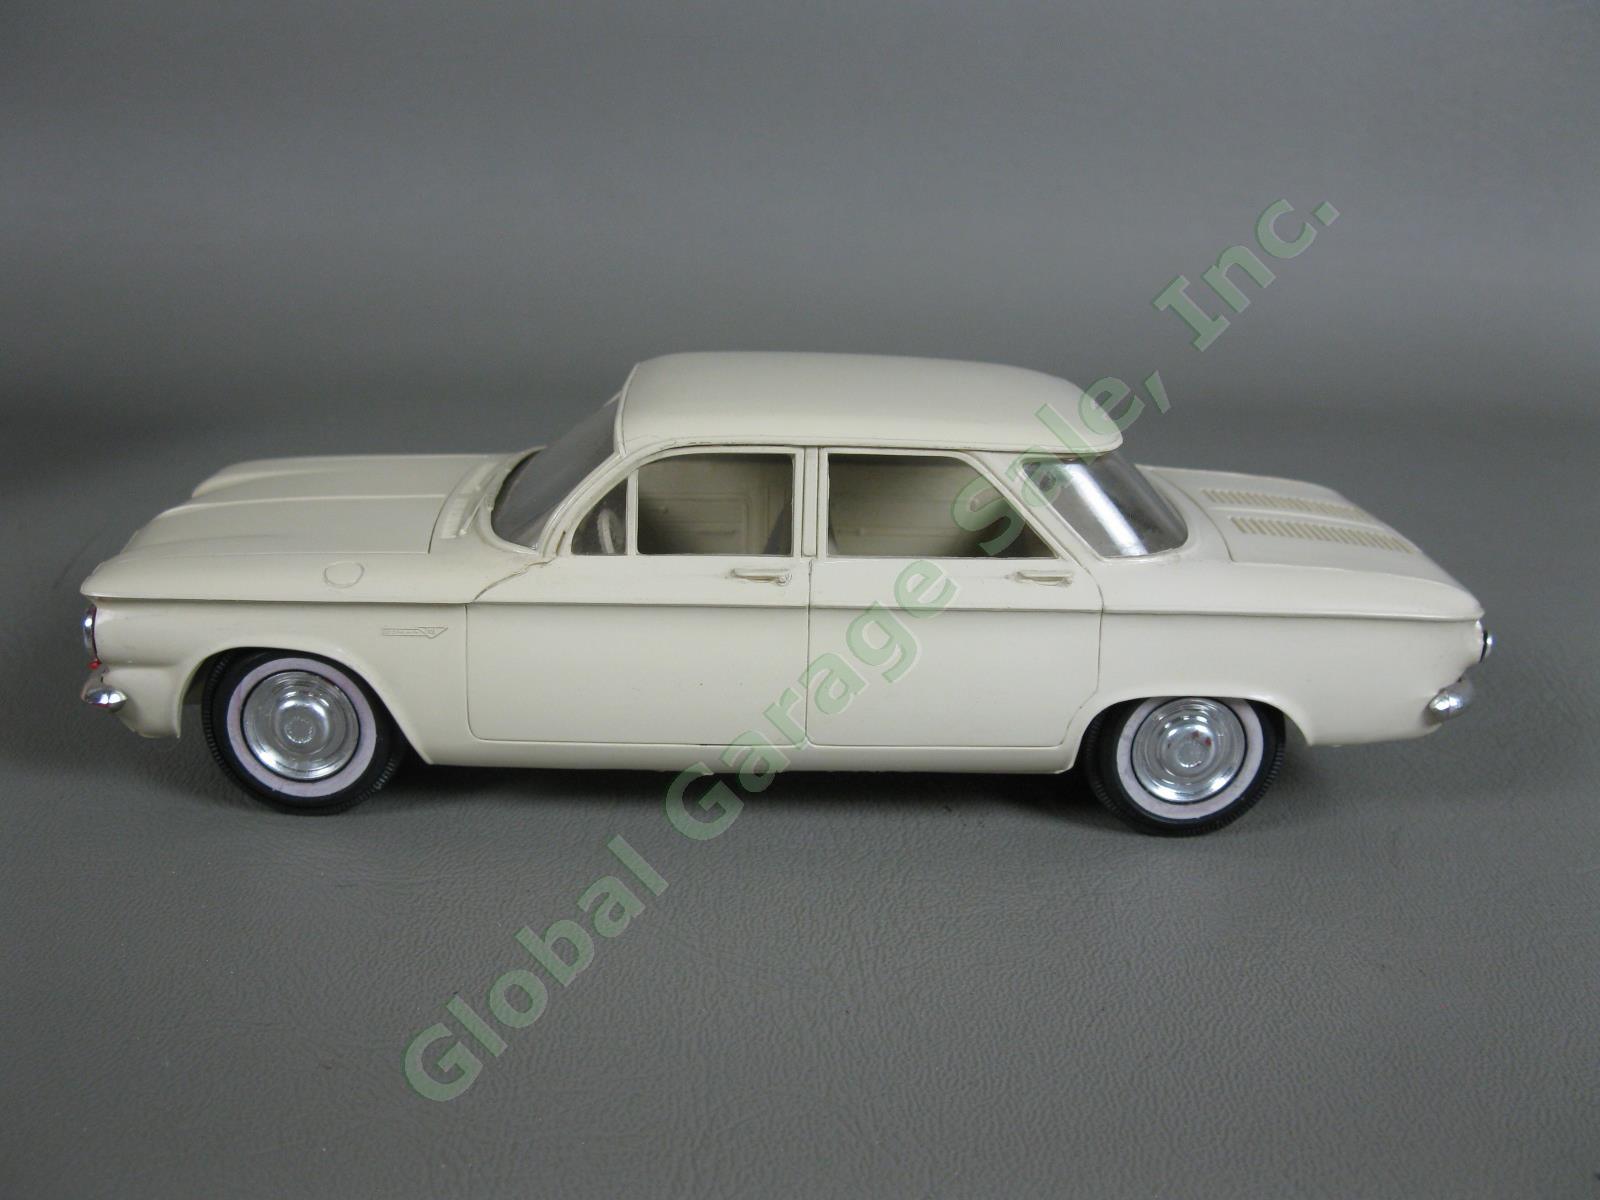 ORIGINAL Vintage 1961 Chevrolet Cameo White Corvair Dealer Promo Model Car NR 1